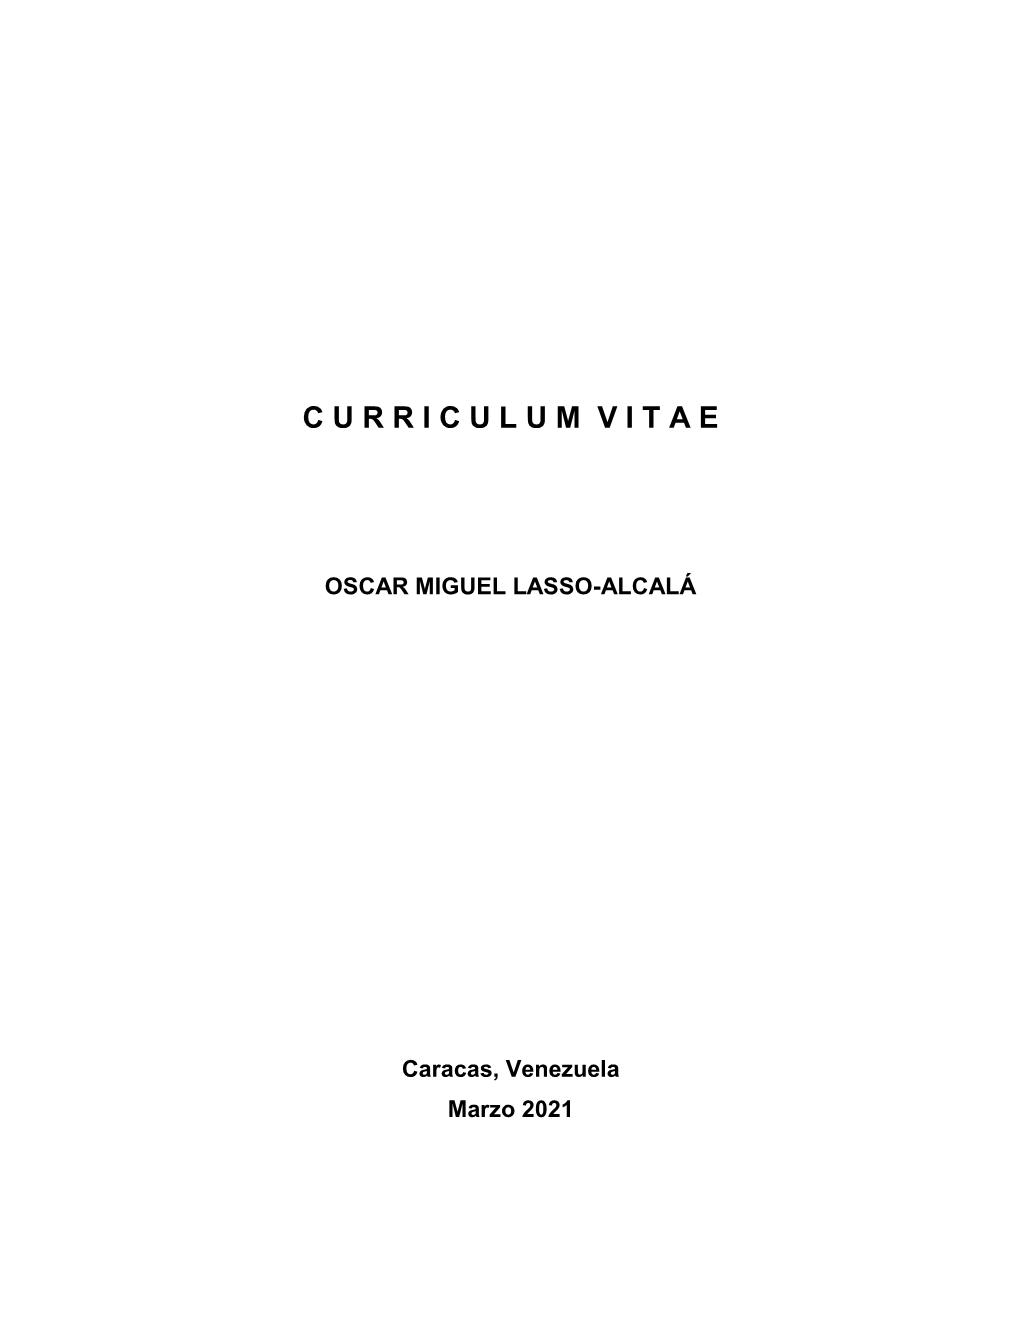 Curriculumvitae